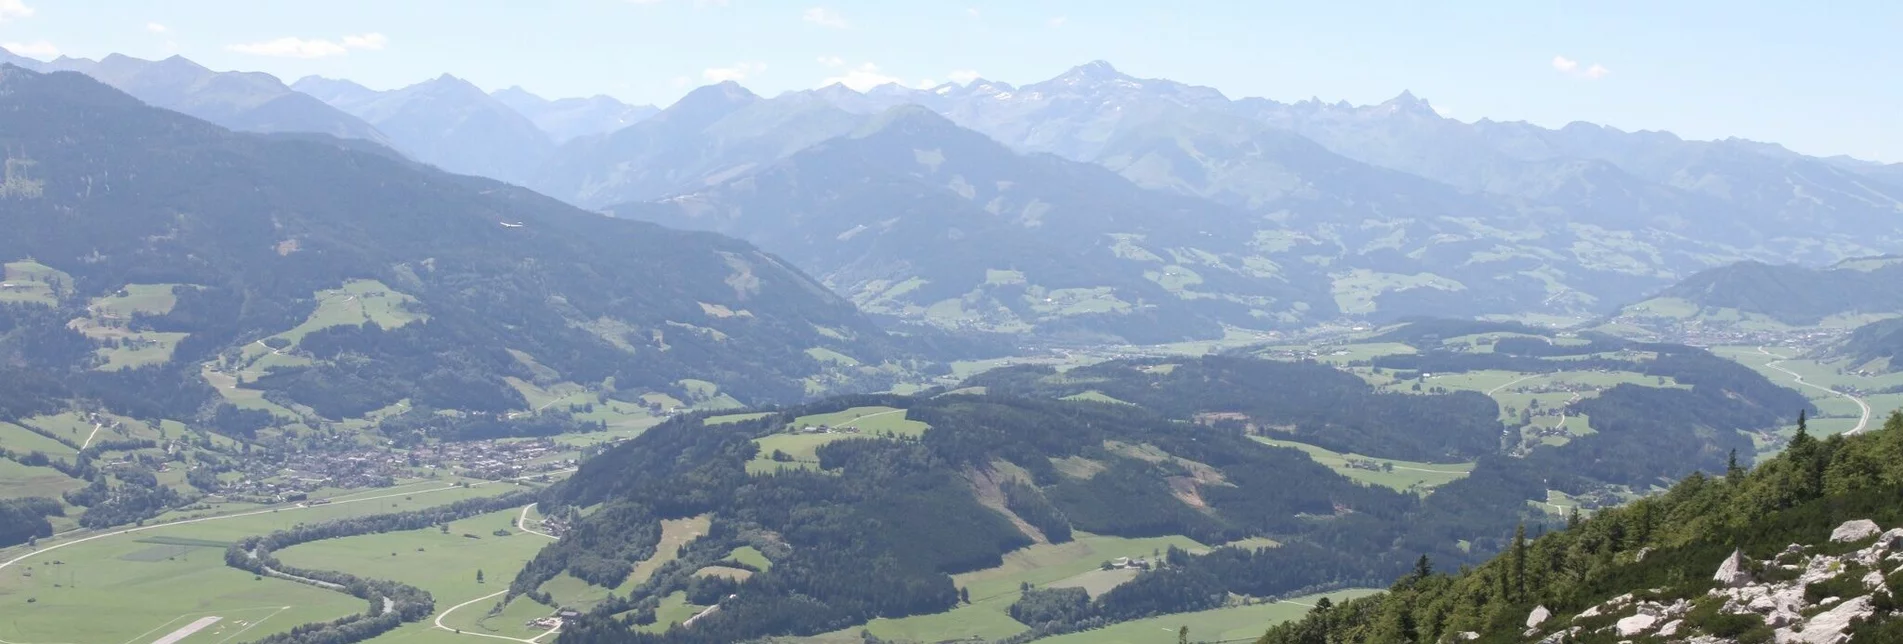 Bergtour Am Fuße des mächtigen Grimmings - Touren-Impression #1 | © Erlebnisregion Schladming-Dachstein